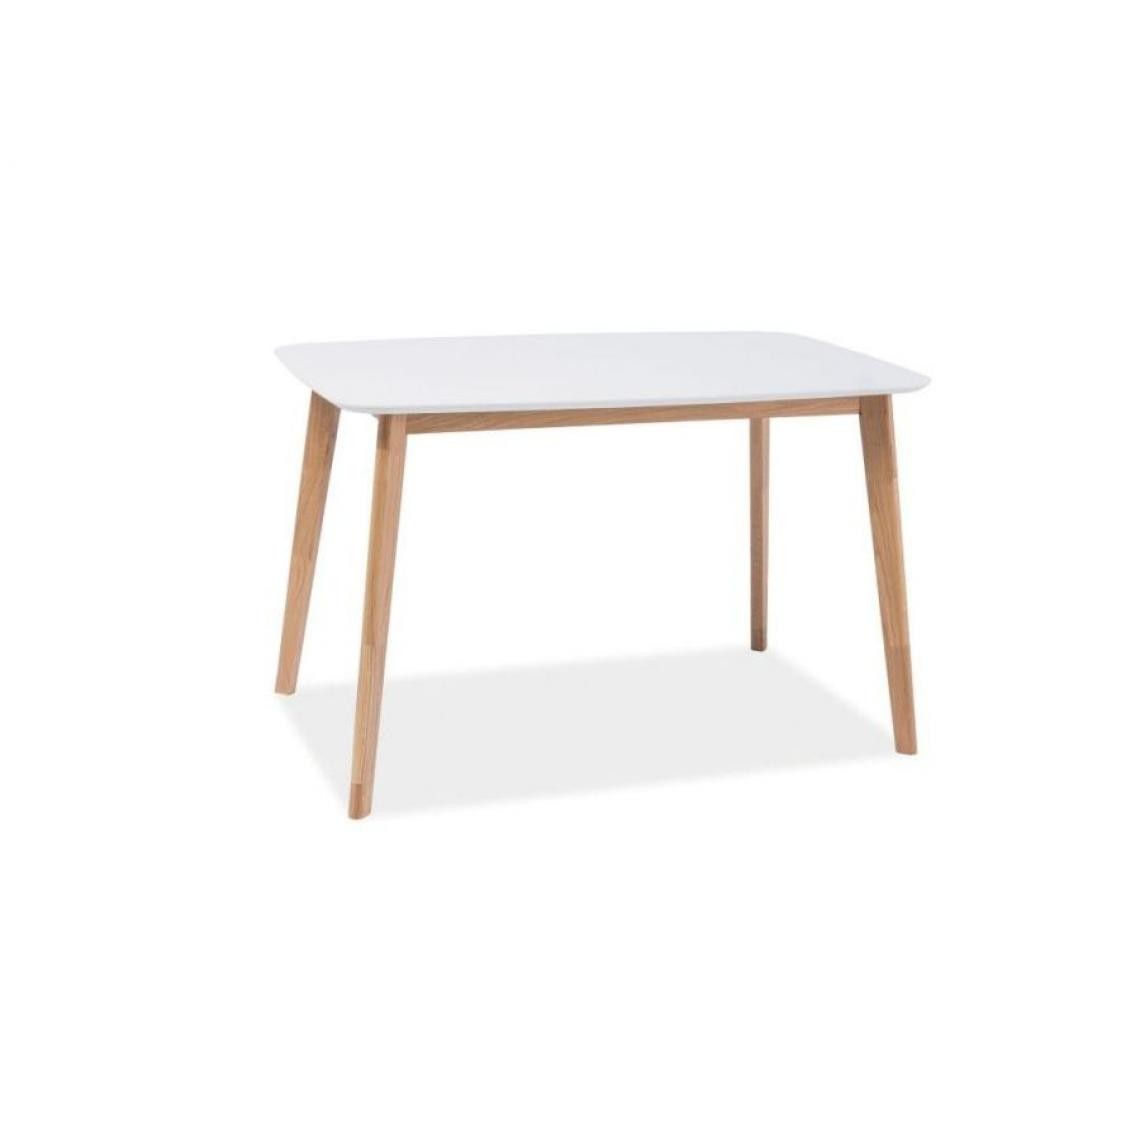 Hucoco - MOCCO - Petite table pour la salle à manger - Dimensions : 120x75x75 cm - Plateau en bois MDF - De style scandinave - Blanc - Tables à manger